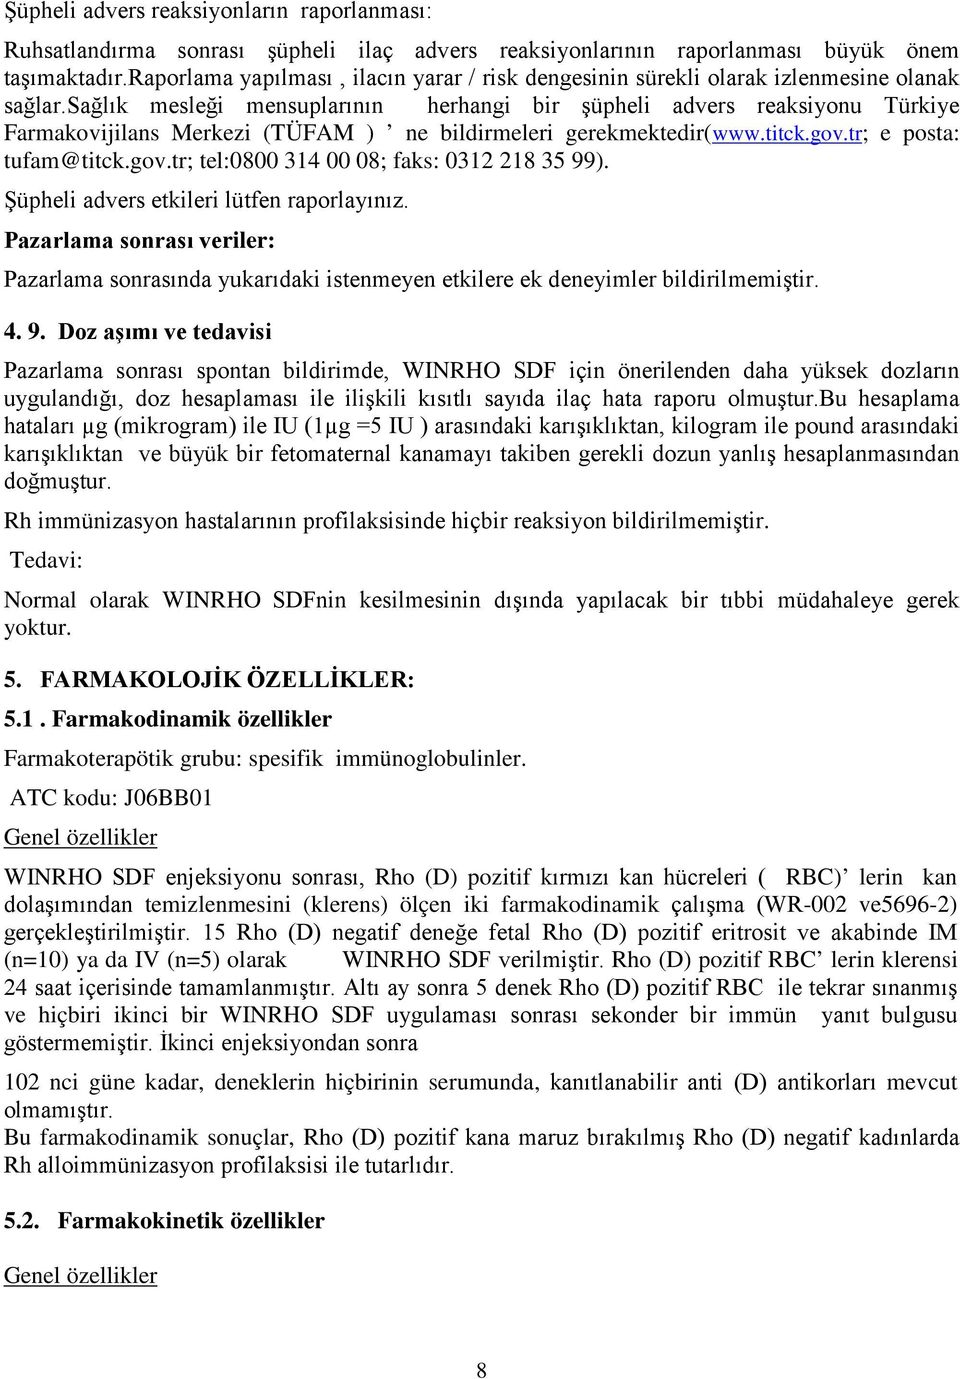 sağlık mesleği mensuplarının herhangi bir şüpheli advers reaksiyonu Türkiye Farmakovijilans Merkezi (TÜFAM ) ne bildirmeleri gerekmektedir(www.titck.gov.tr; e posta: tufam@titck.gov.tr; tel:0800 314 00 08; faks: 0312 218 35 99).